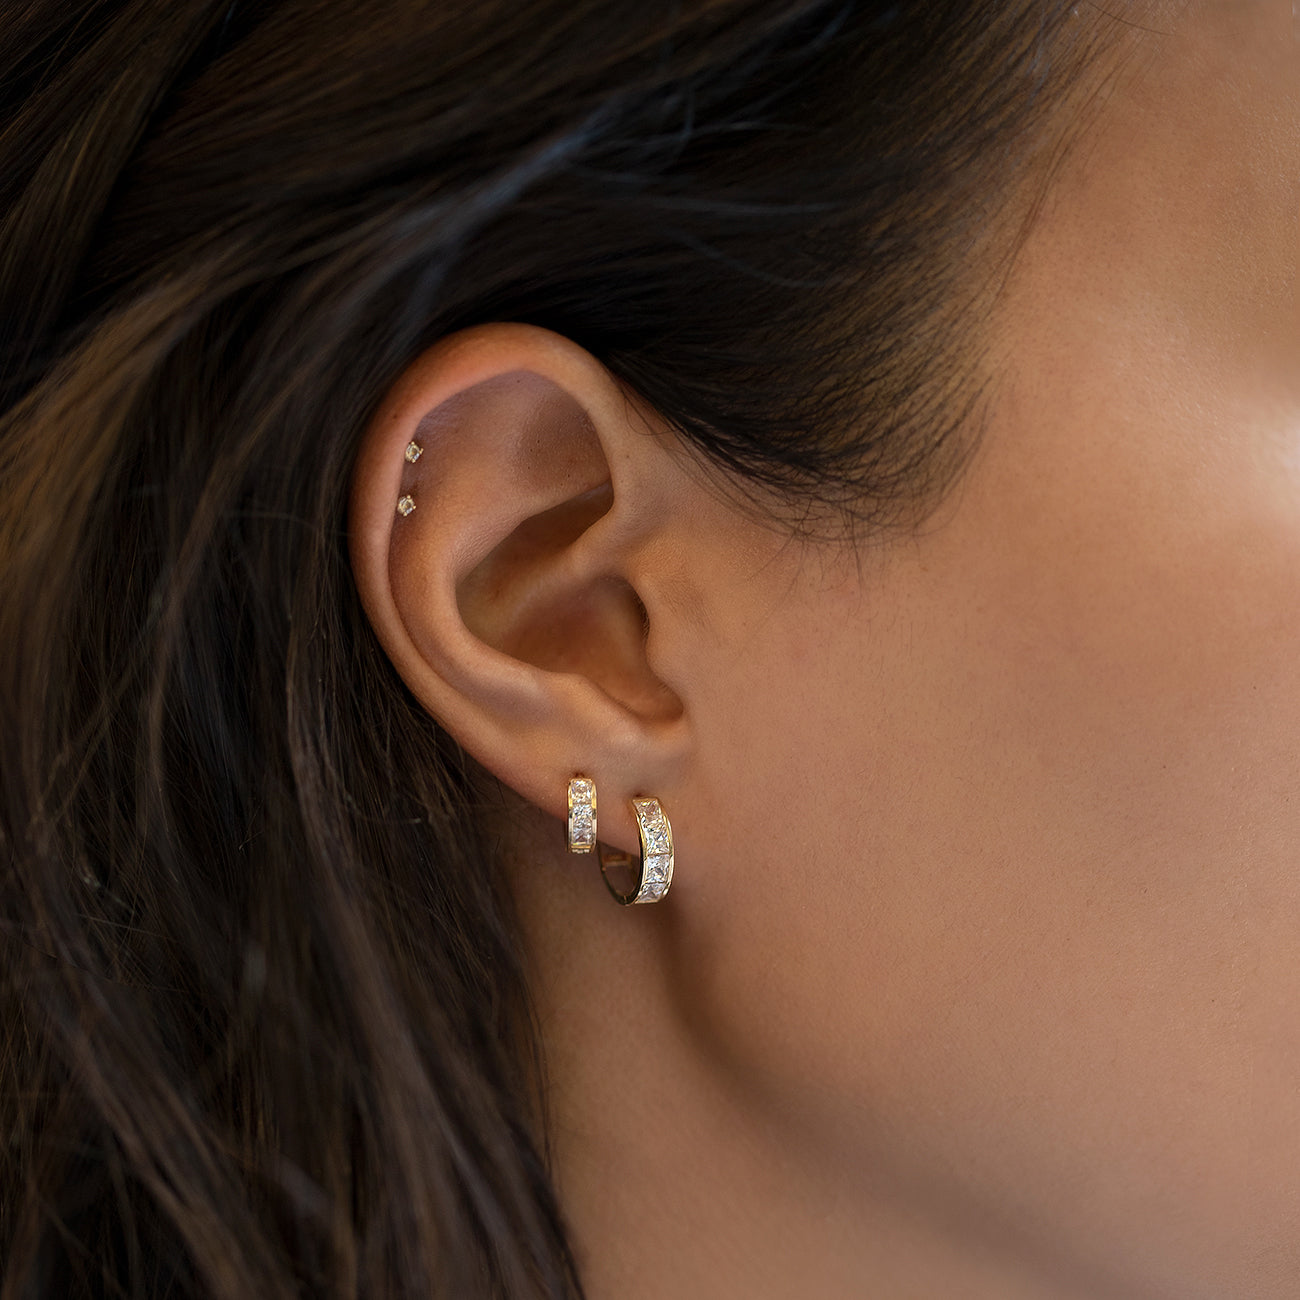 caption: Model wearing earring on first piercing